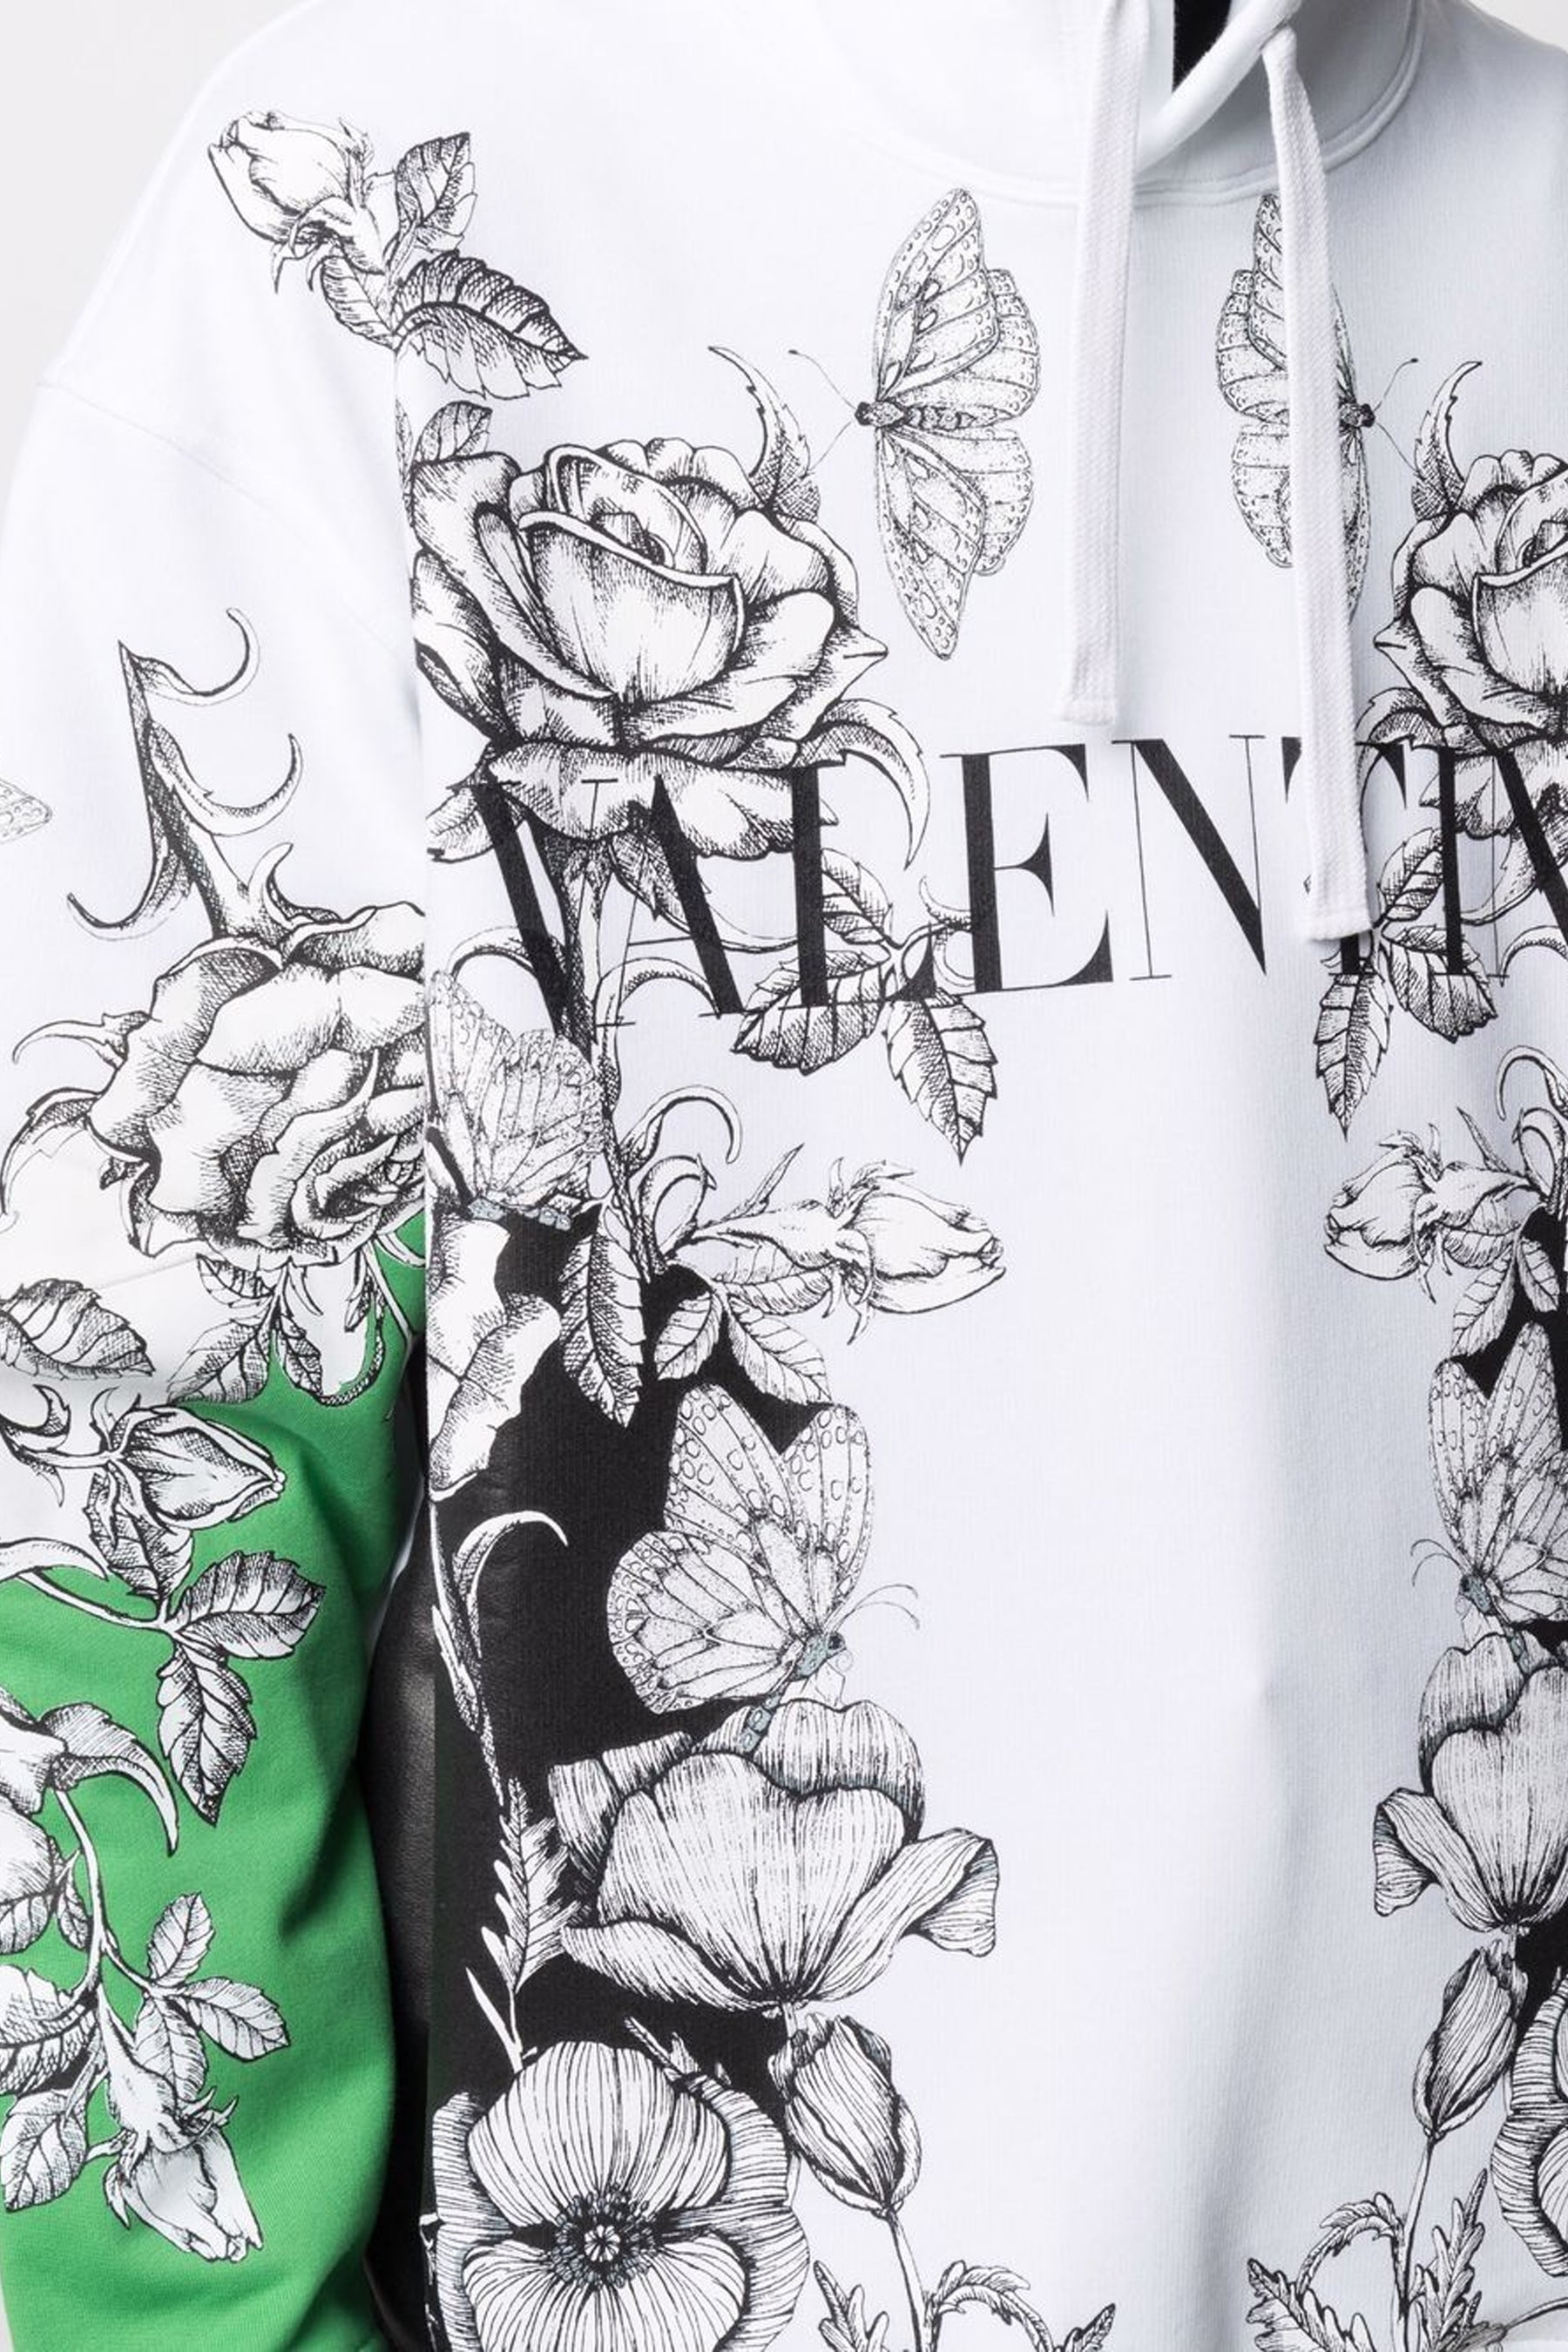 Valentino Dark Blooming print hoodie